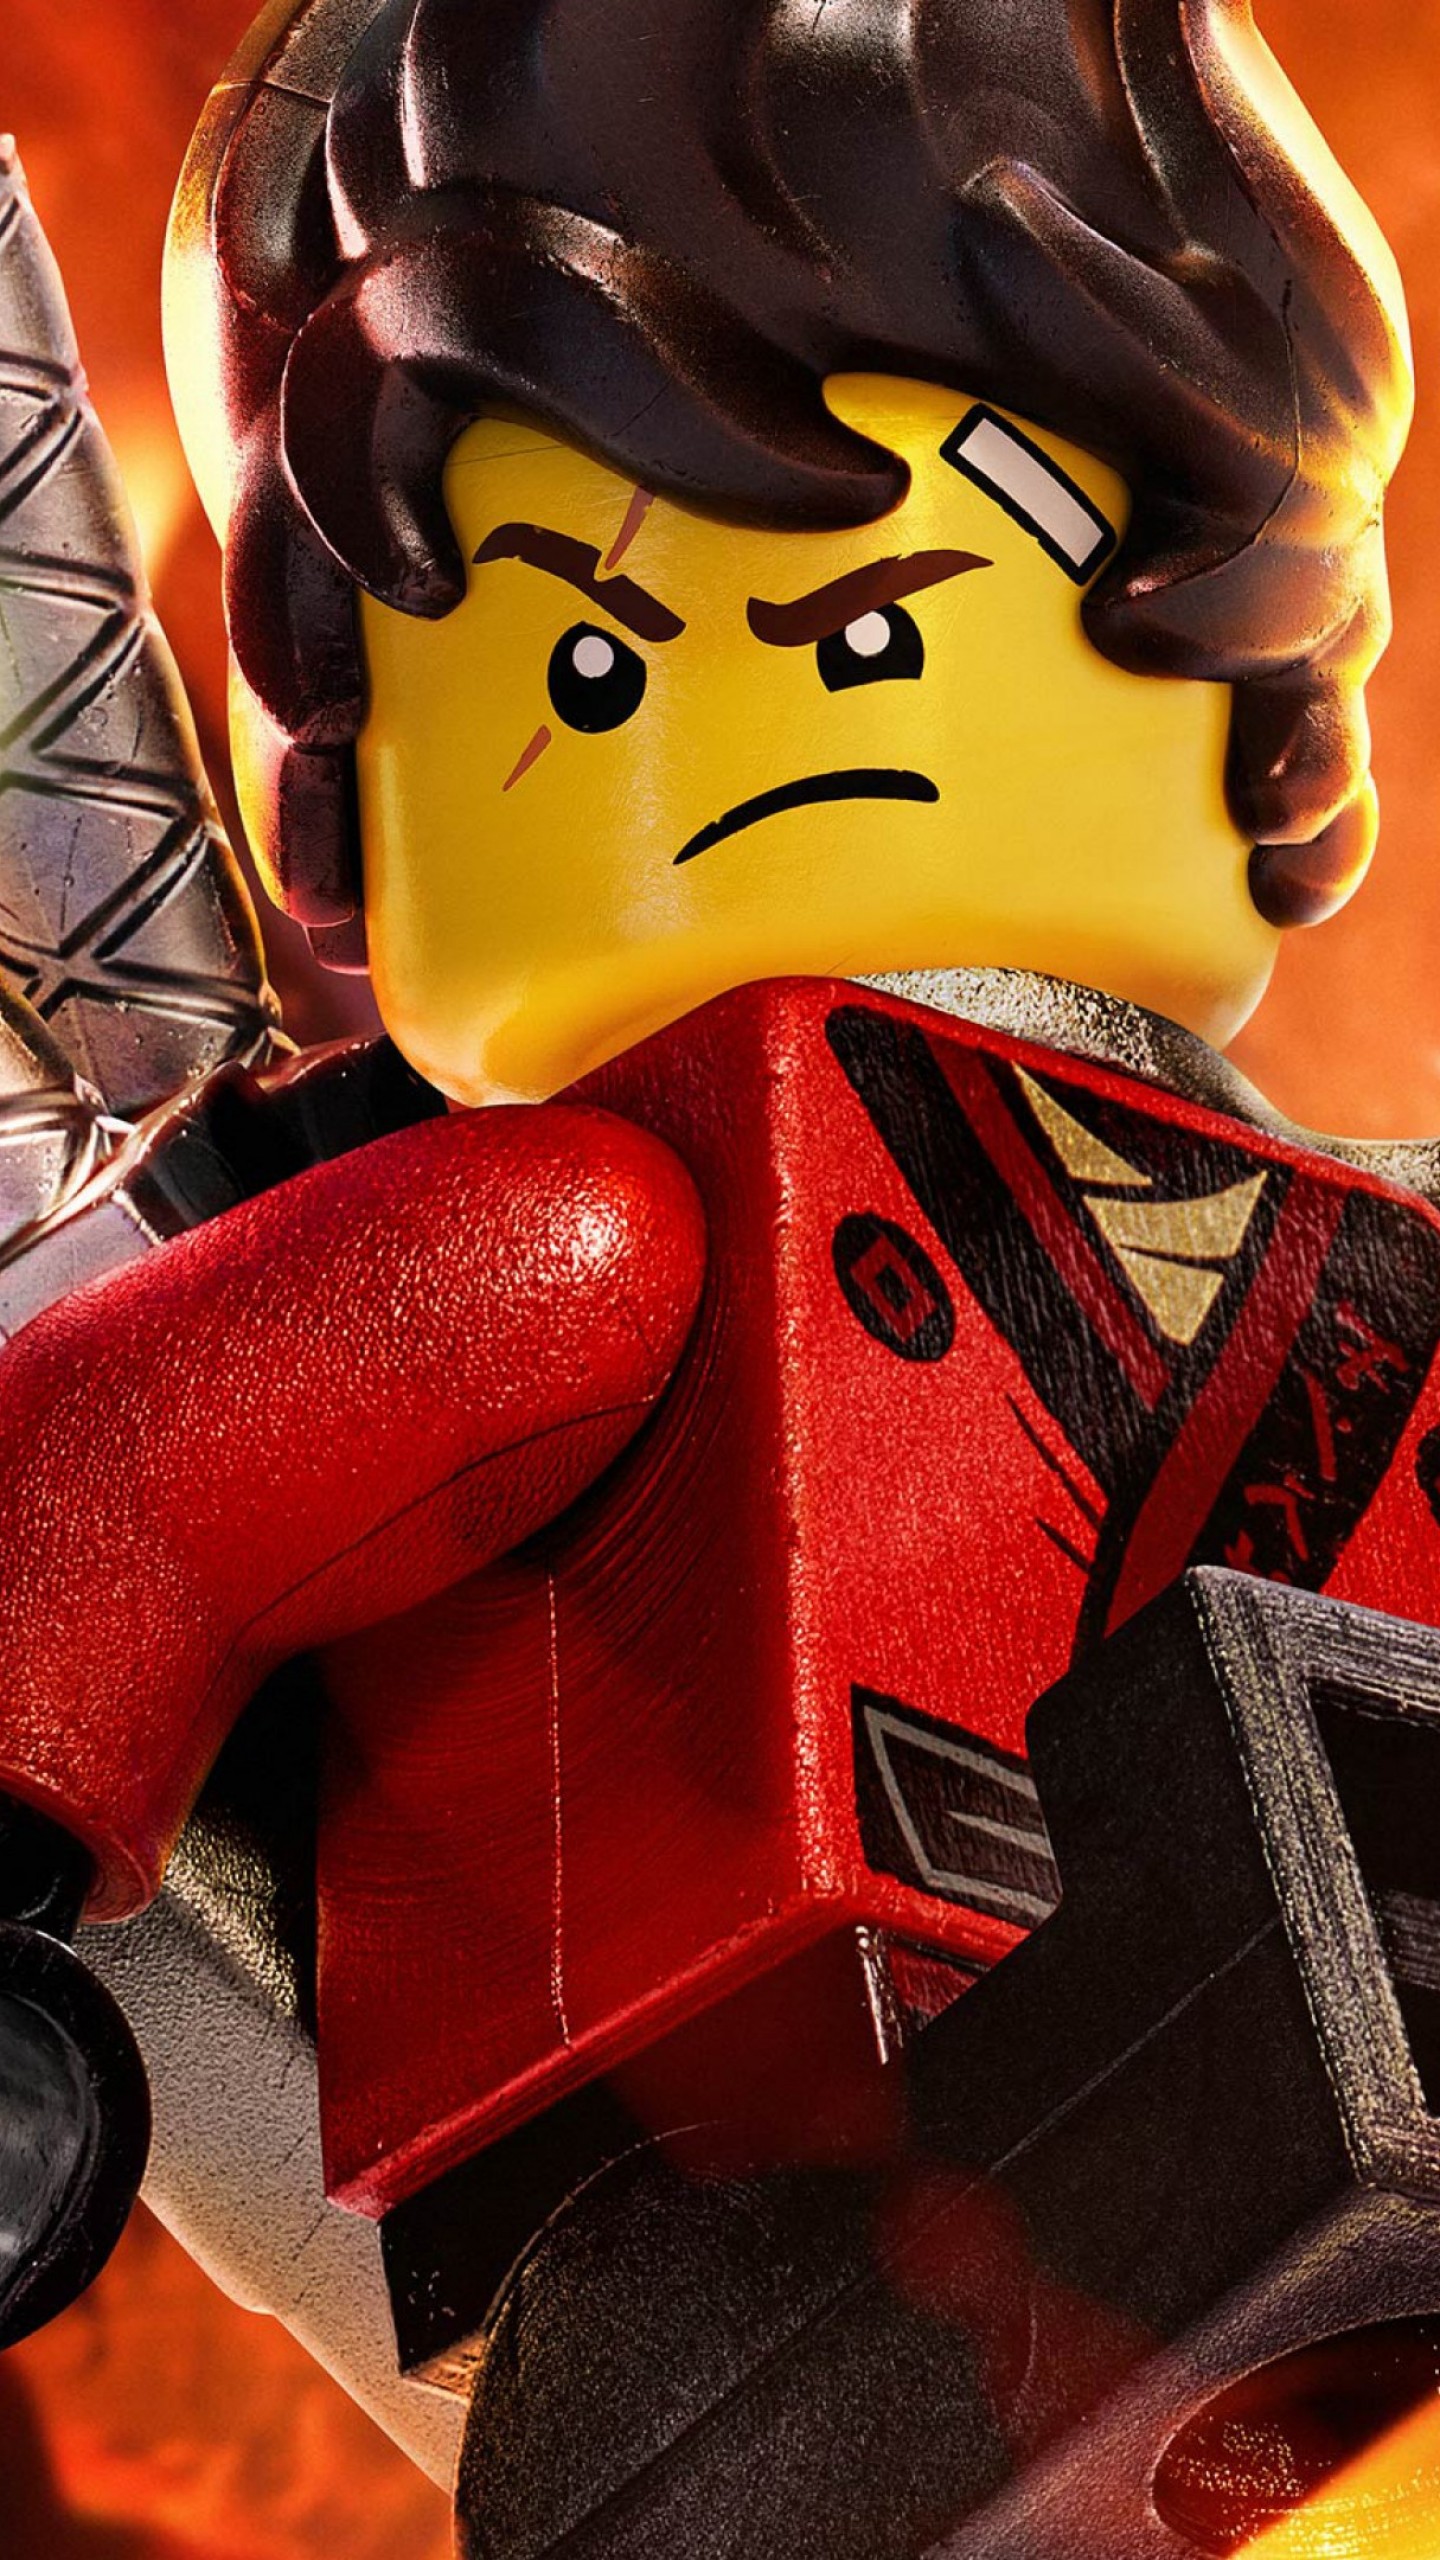 2017 The Lego Ninjago Movie Wallpapers